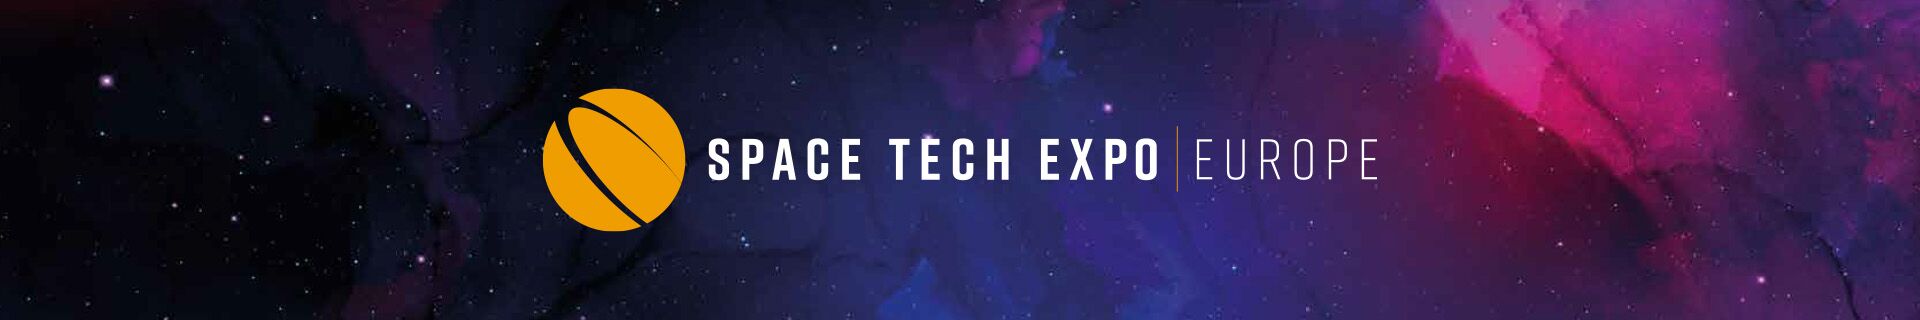 Header Space Tech Expo Europe